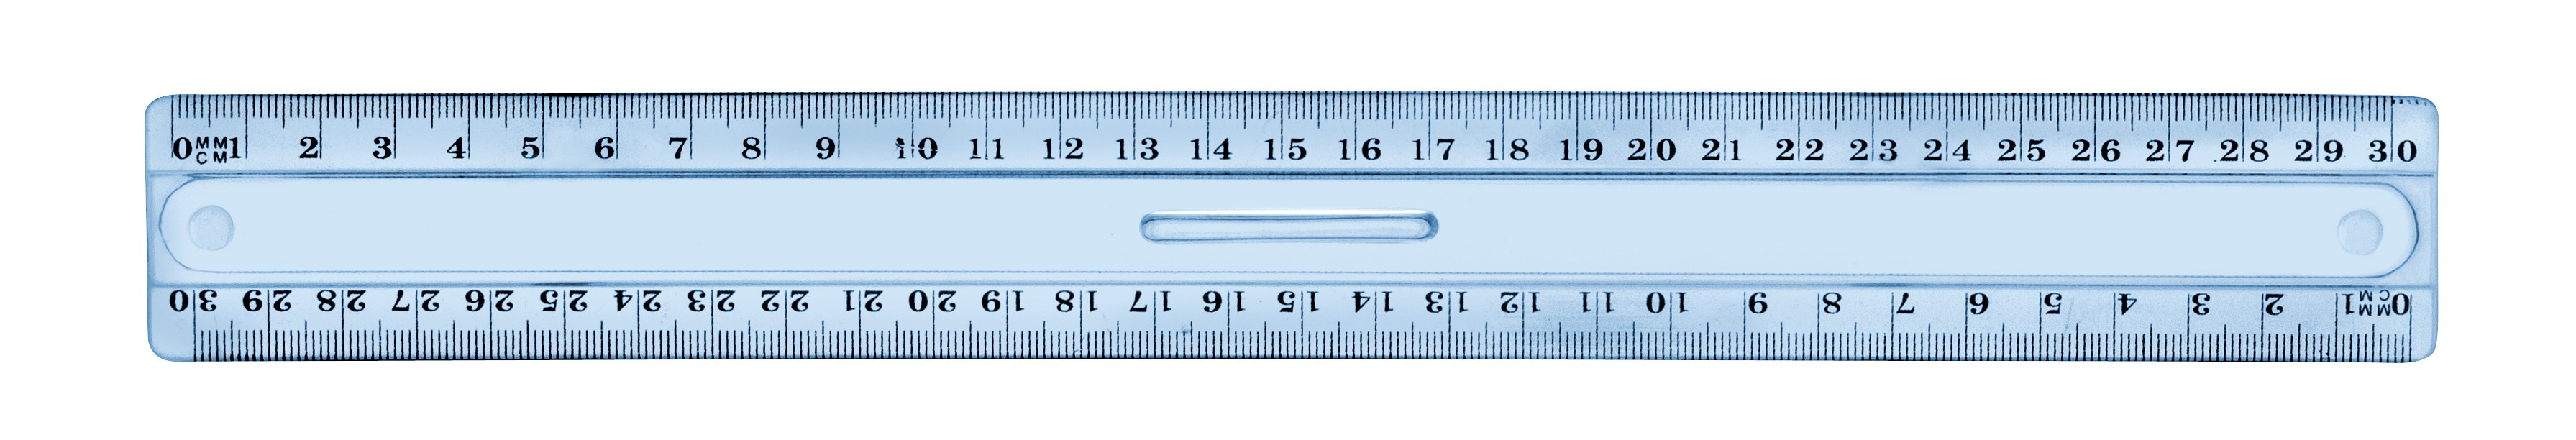 Règle de précision 30cm en plastique avec bord en métal - Xcut